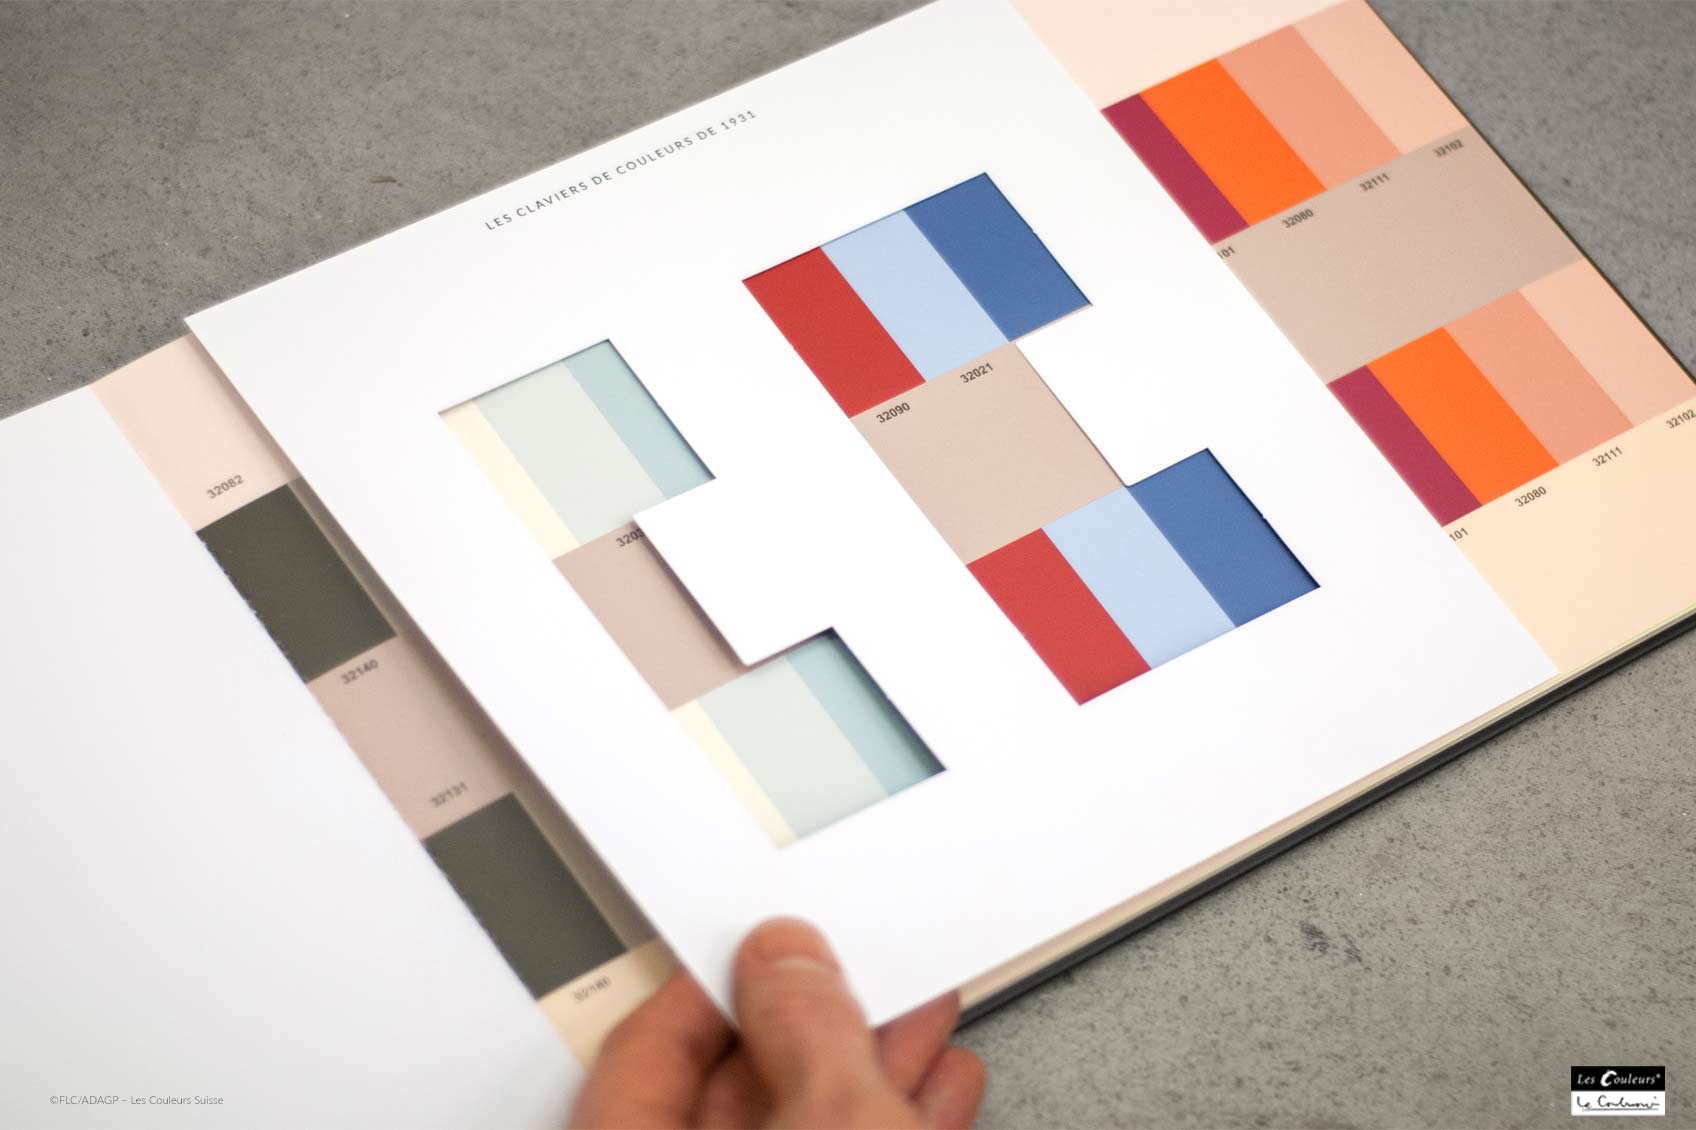 Le Corbusier Farbklaviatur Farbgestaltung ©FLC/ADAGP – Les Couleurs Suisse